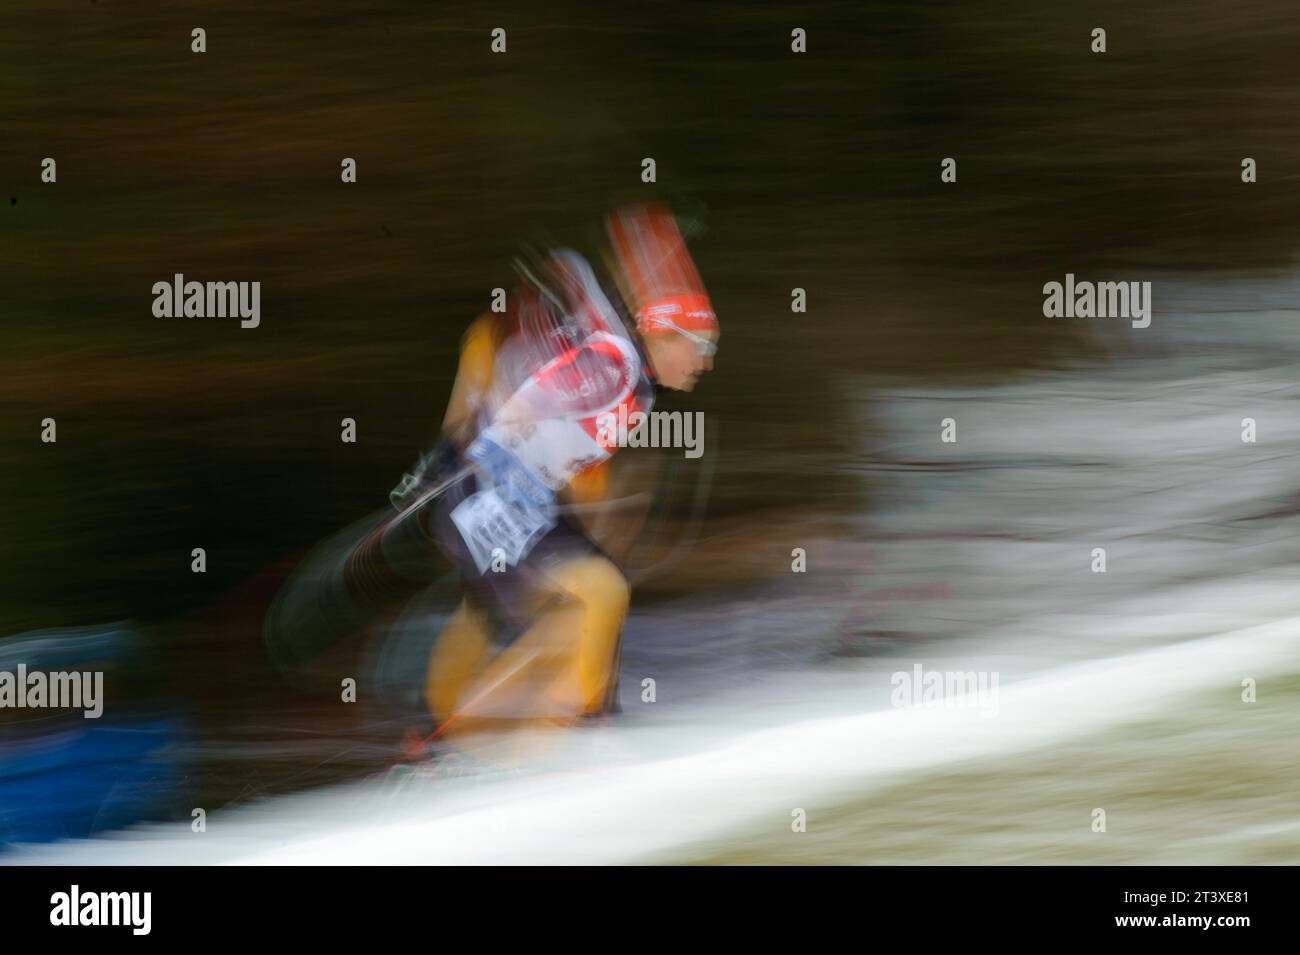 Luise Kummer Aktion Biathlon Welt Cup 7,5 KM Sprint der Frauen in Ruhpolding, Deutschland am 16.01.2015 Stock Photo